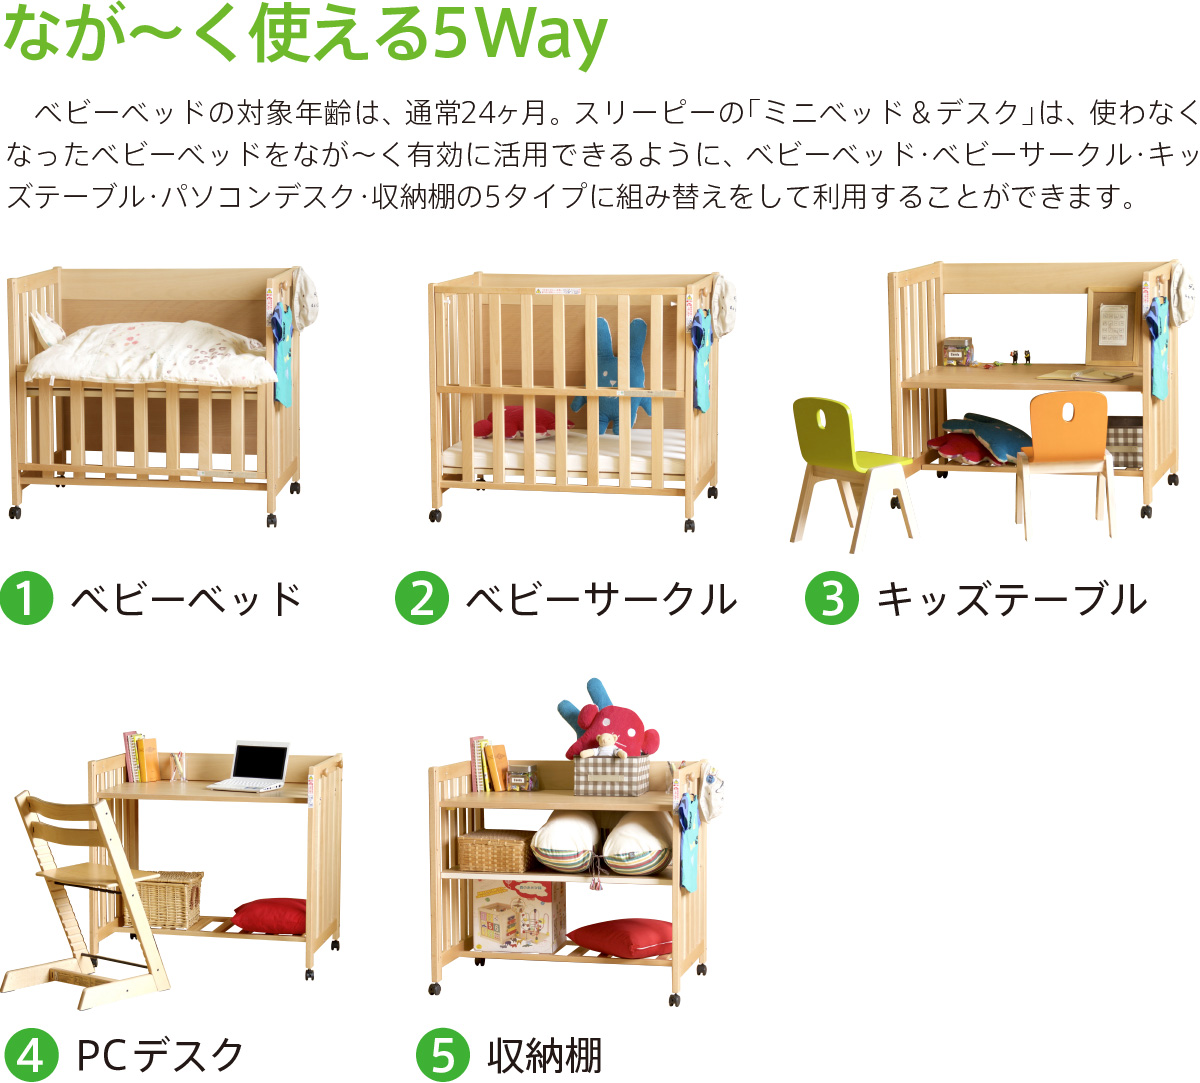 日本製 5way ベビーベッド 「ミニベッド＆デスク」 ベビーベット ミニ 石崎家具 | スリーピー楽天市場店